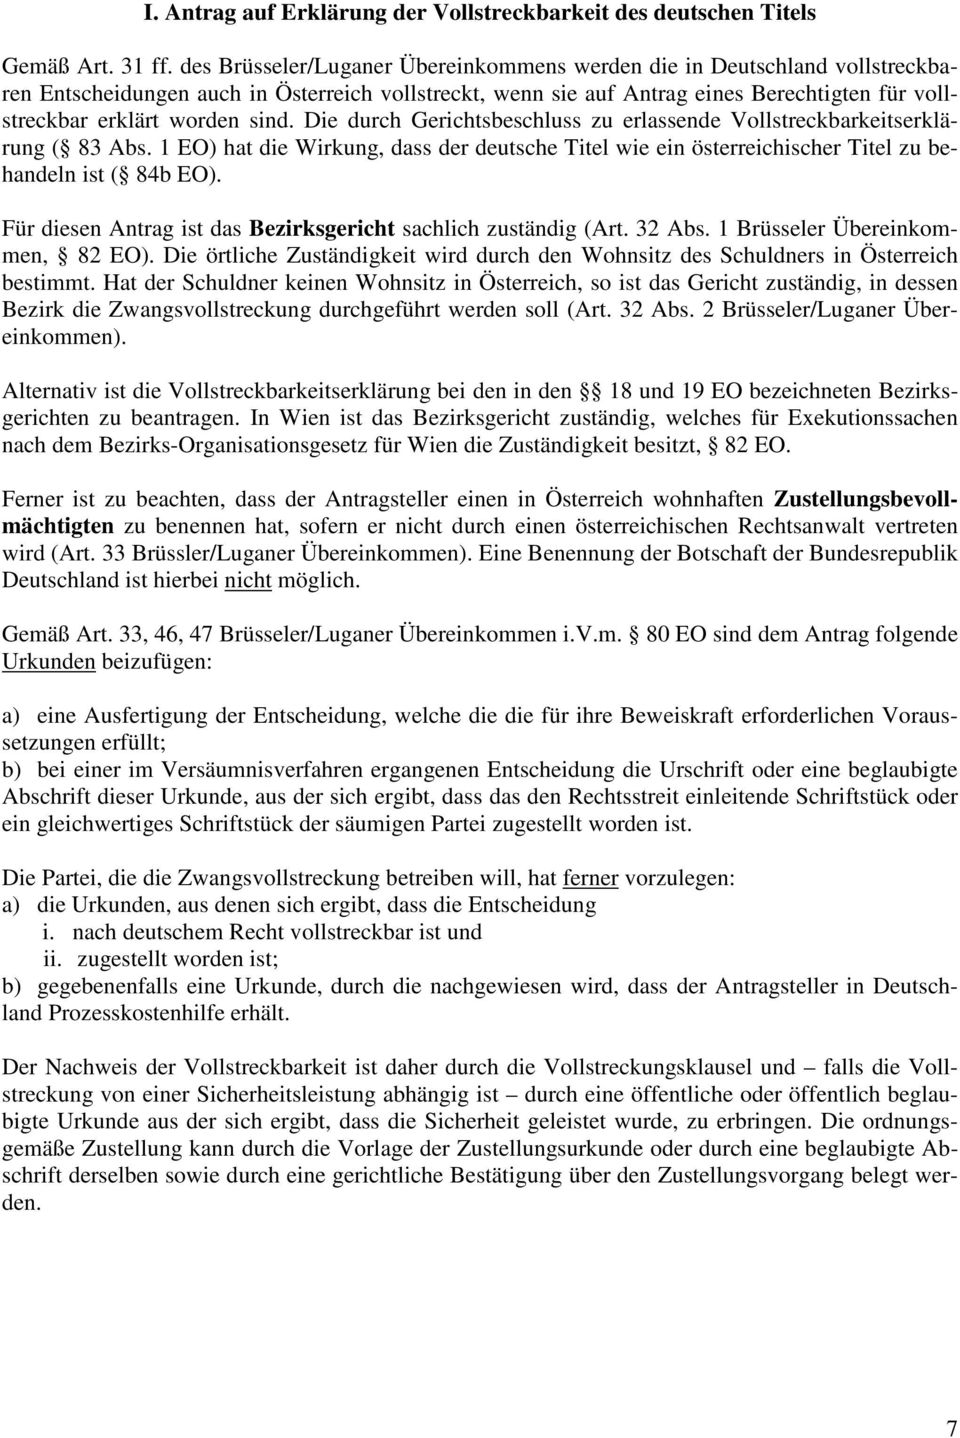 sind. Die durch Gerichtsbeschluss zu erlassende Vollstreckbarkeitserklärung ( 83 Abs. 1 EO) hat die Wirkung, dass der deutsche Titel wie ein österreichischer Titel zu behandeln ist ( 84b EO).